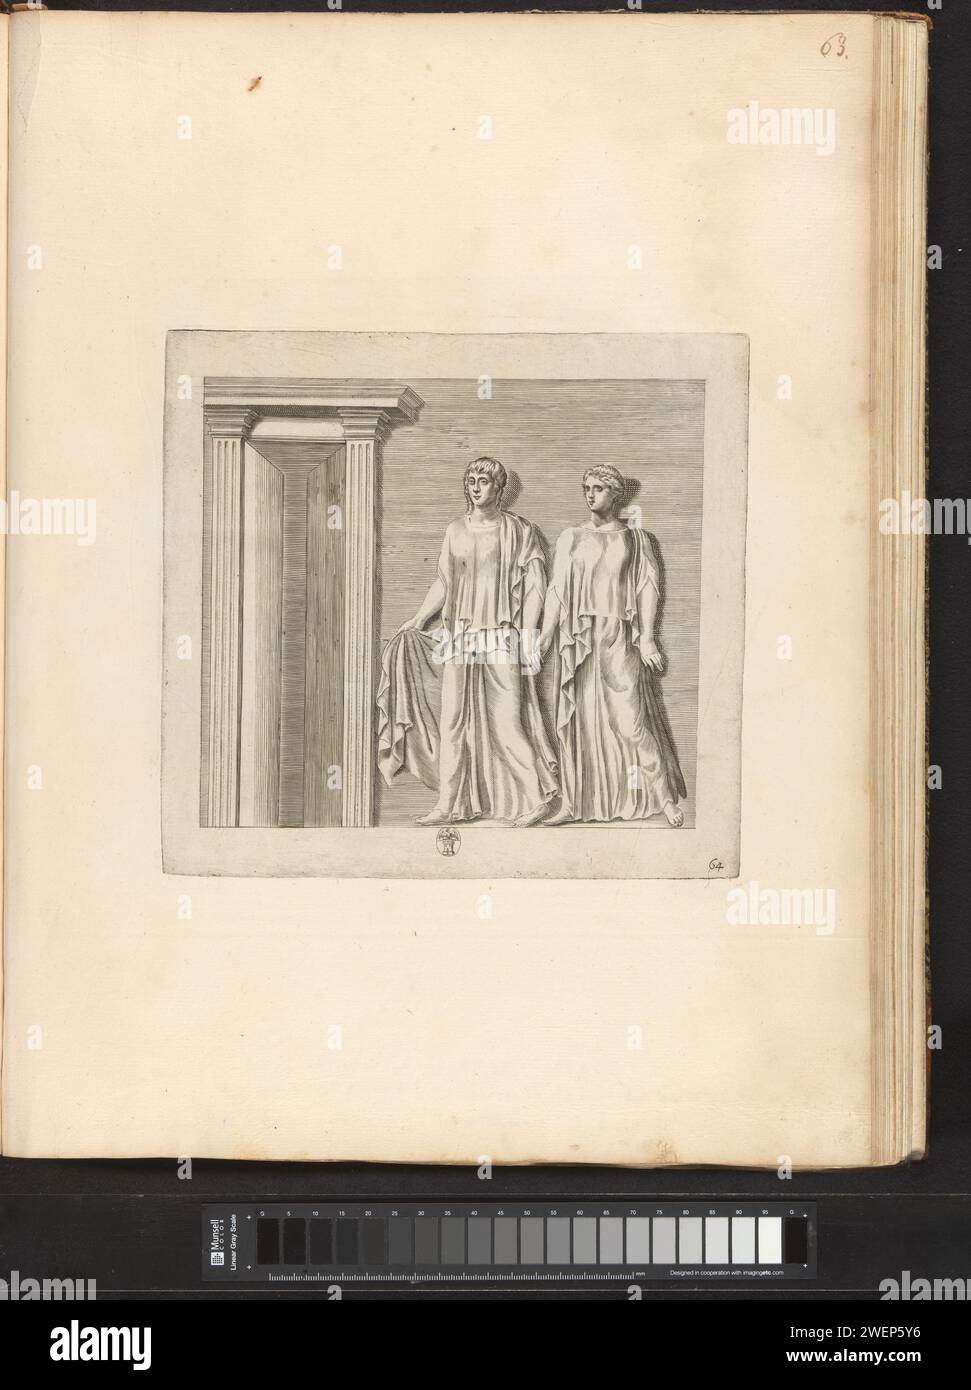 BAS-Relief mit der Darstellung einer Ehe, 1636 - 1647 Druck Bas-Relief mit der Darstellung einer Ehe. Ein Mann und eine Frau halten sich die rechte Hand. Ein springender Hund zwischen ihnen. Rechts sind ein Mann und ein Kind mit einem Hund am Arm. In der Mitte des Wappens von Vincenzo Giustiniani, dem dieses Basrelief gehörte. Print ist Teil eines Albums mit einer Serie von Drucken zu den Skulpturen der Sammlung in der Galleria Giustiniani in Rom. Papiergravurstück einer Skulptur, Reproduktion eines Skulpturenstücks. Hände schütteln, 'Dextrarum junctio'. „CastitÃ matrimoniale“, „Fede m Stockfoto